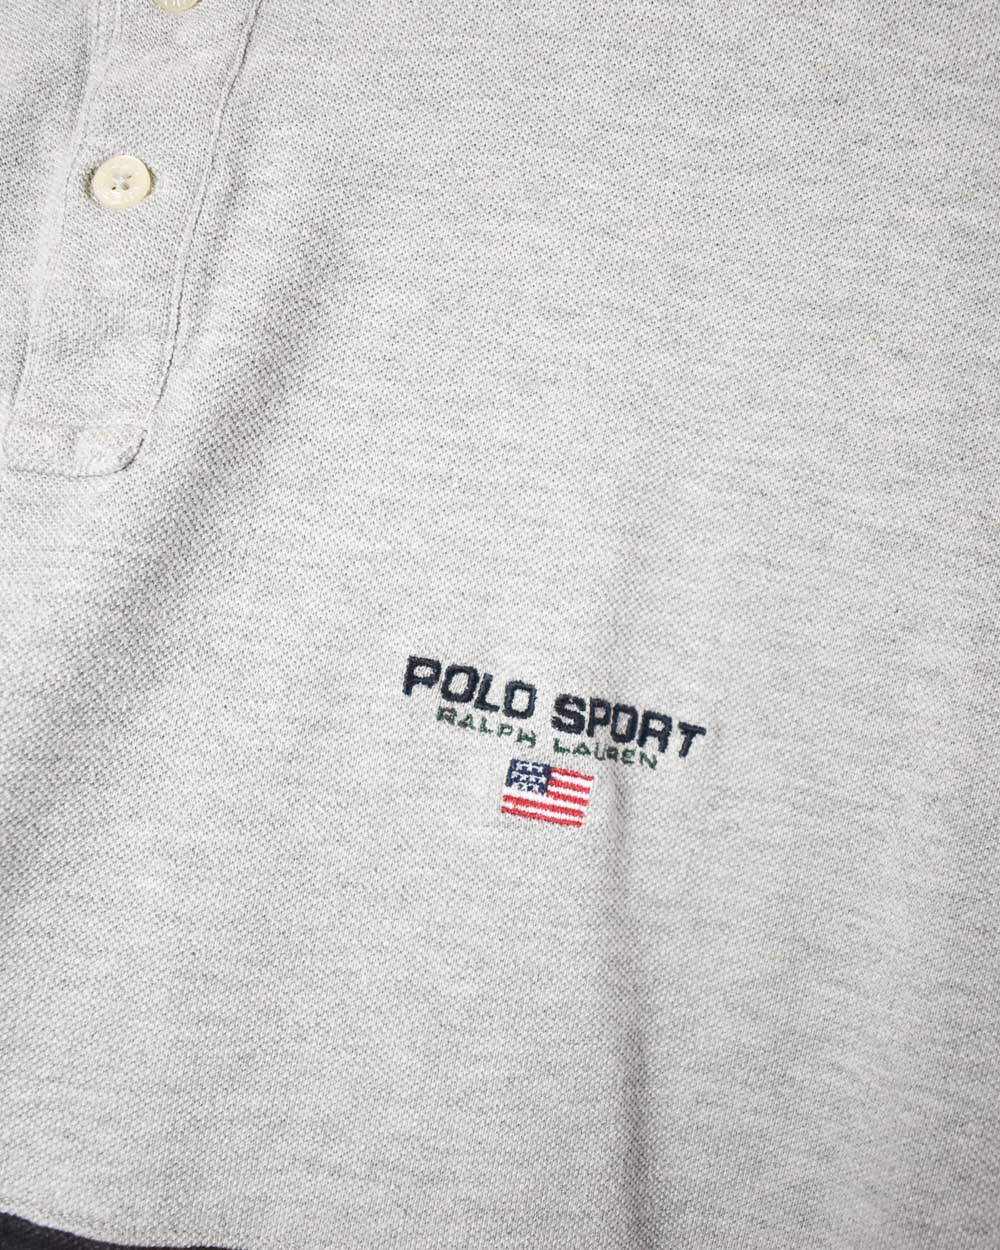 Stone Polo Sport Ralph Lauren Button Down T-Shirt - Medium